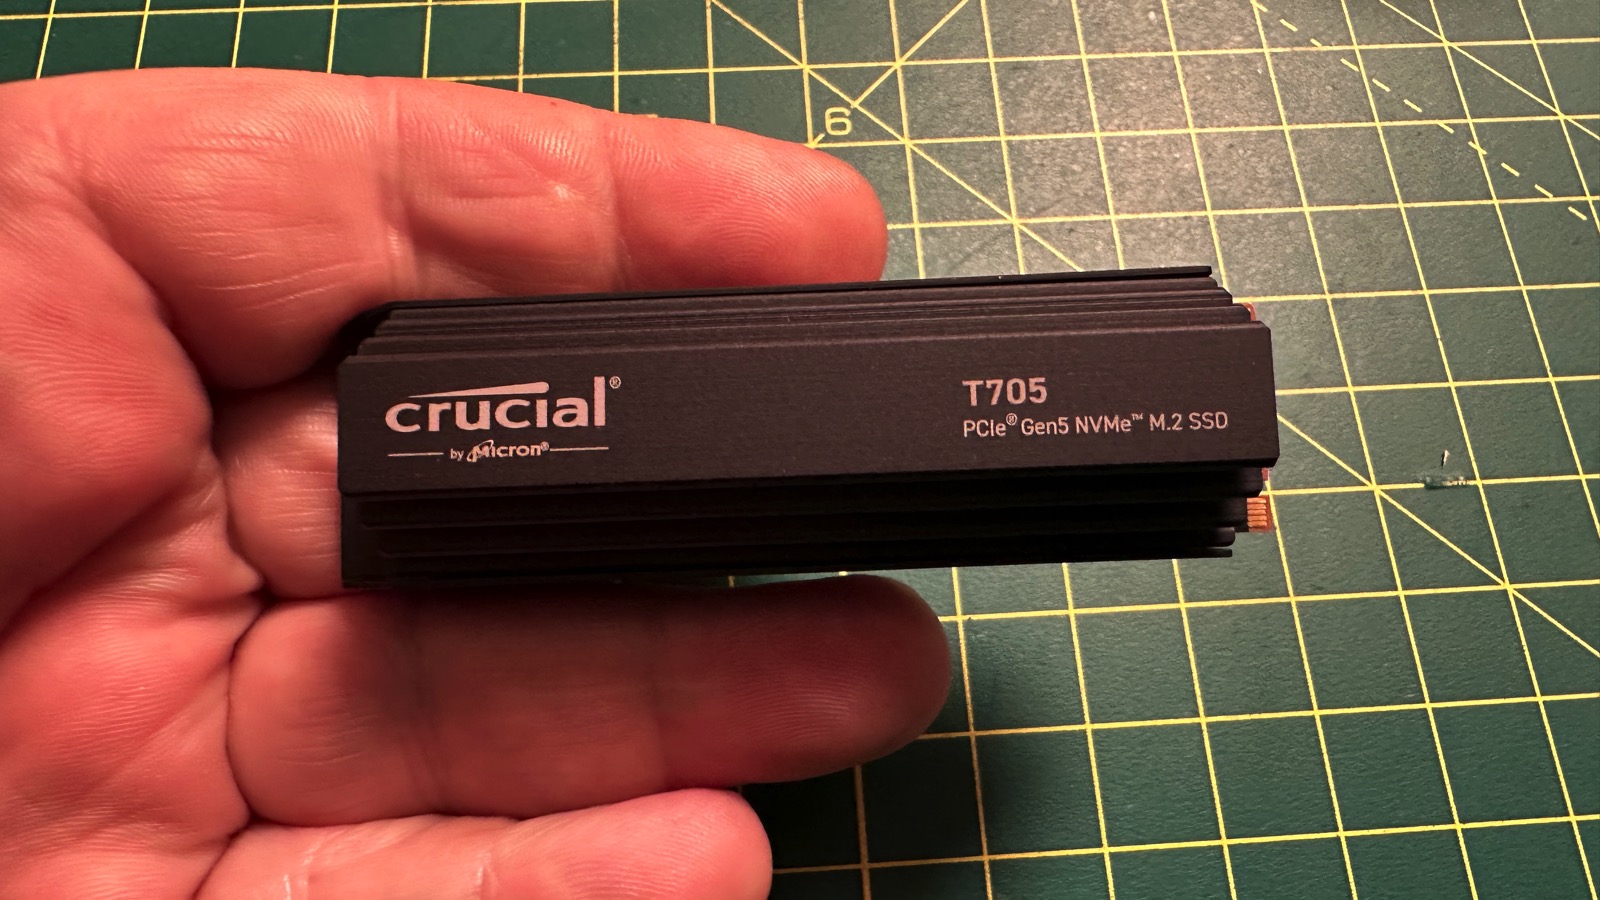 Test SSD Crucial T705 PCIe Gen5 NVMe M.2 : J'ai testé le SSD le plus rapide au monde, les résultats vont vous faire pleurer